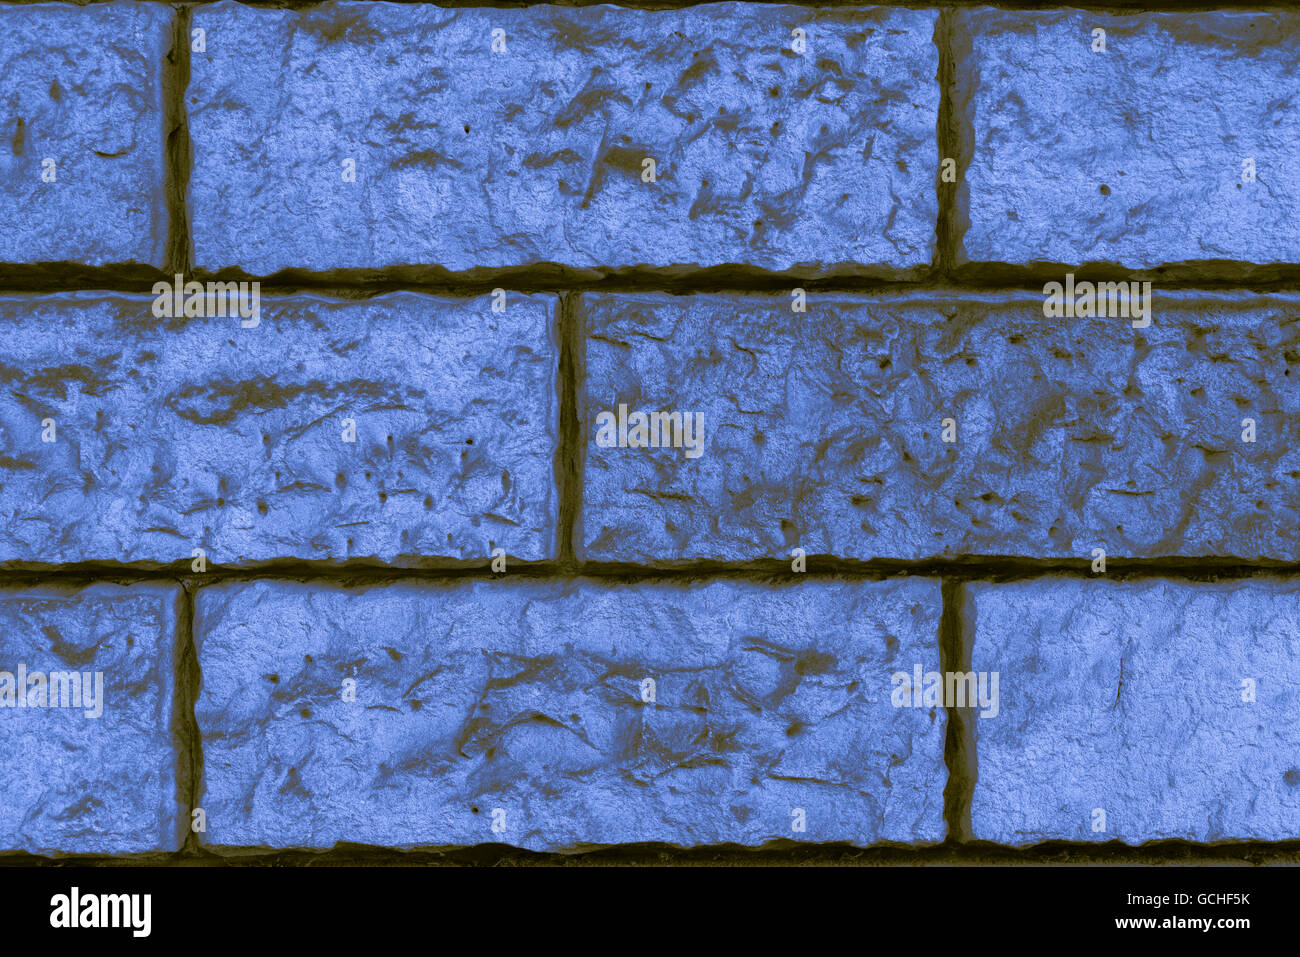 Perfect blue indigo brunâtre jaunâtre naturel haute résolution de fond mur brique urbain Banque D'Images